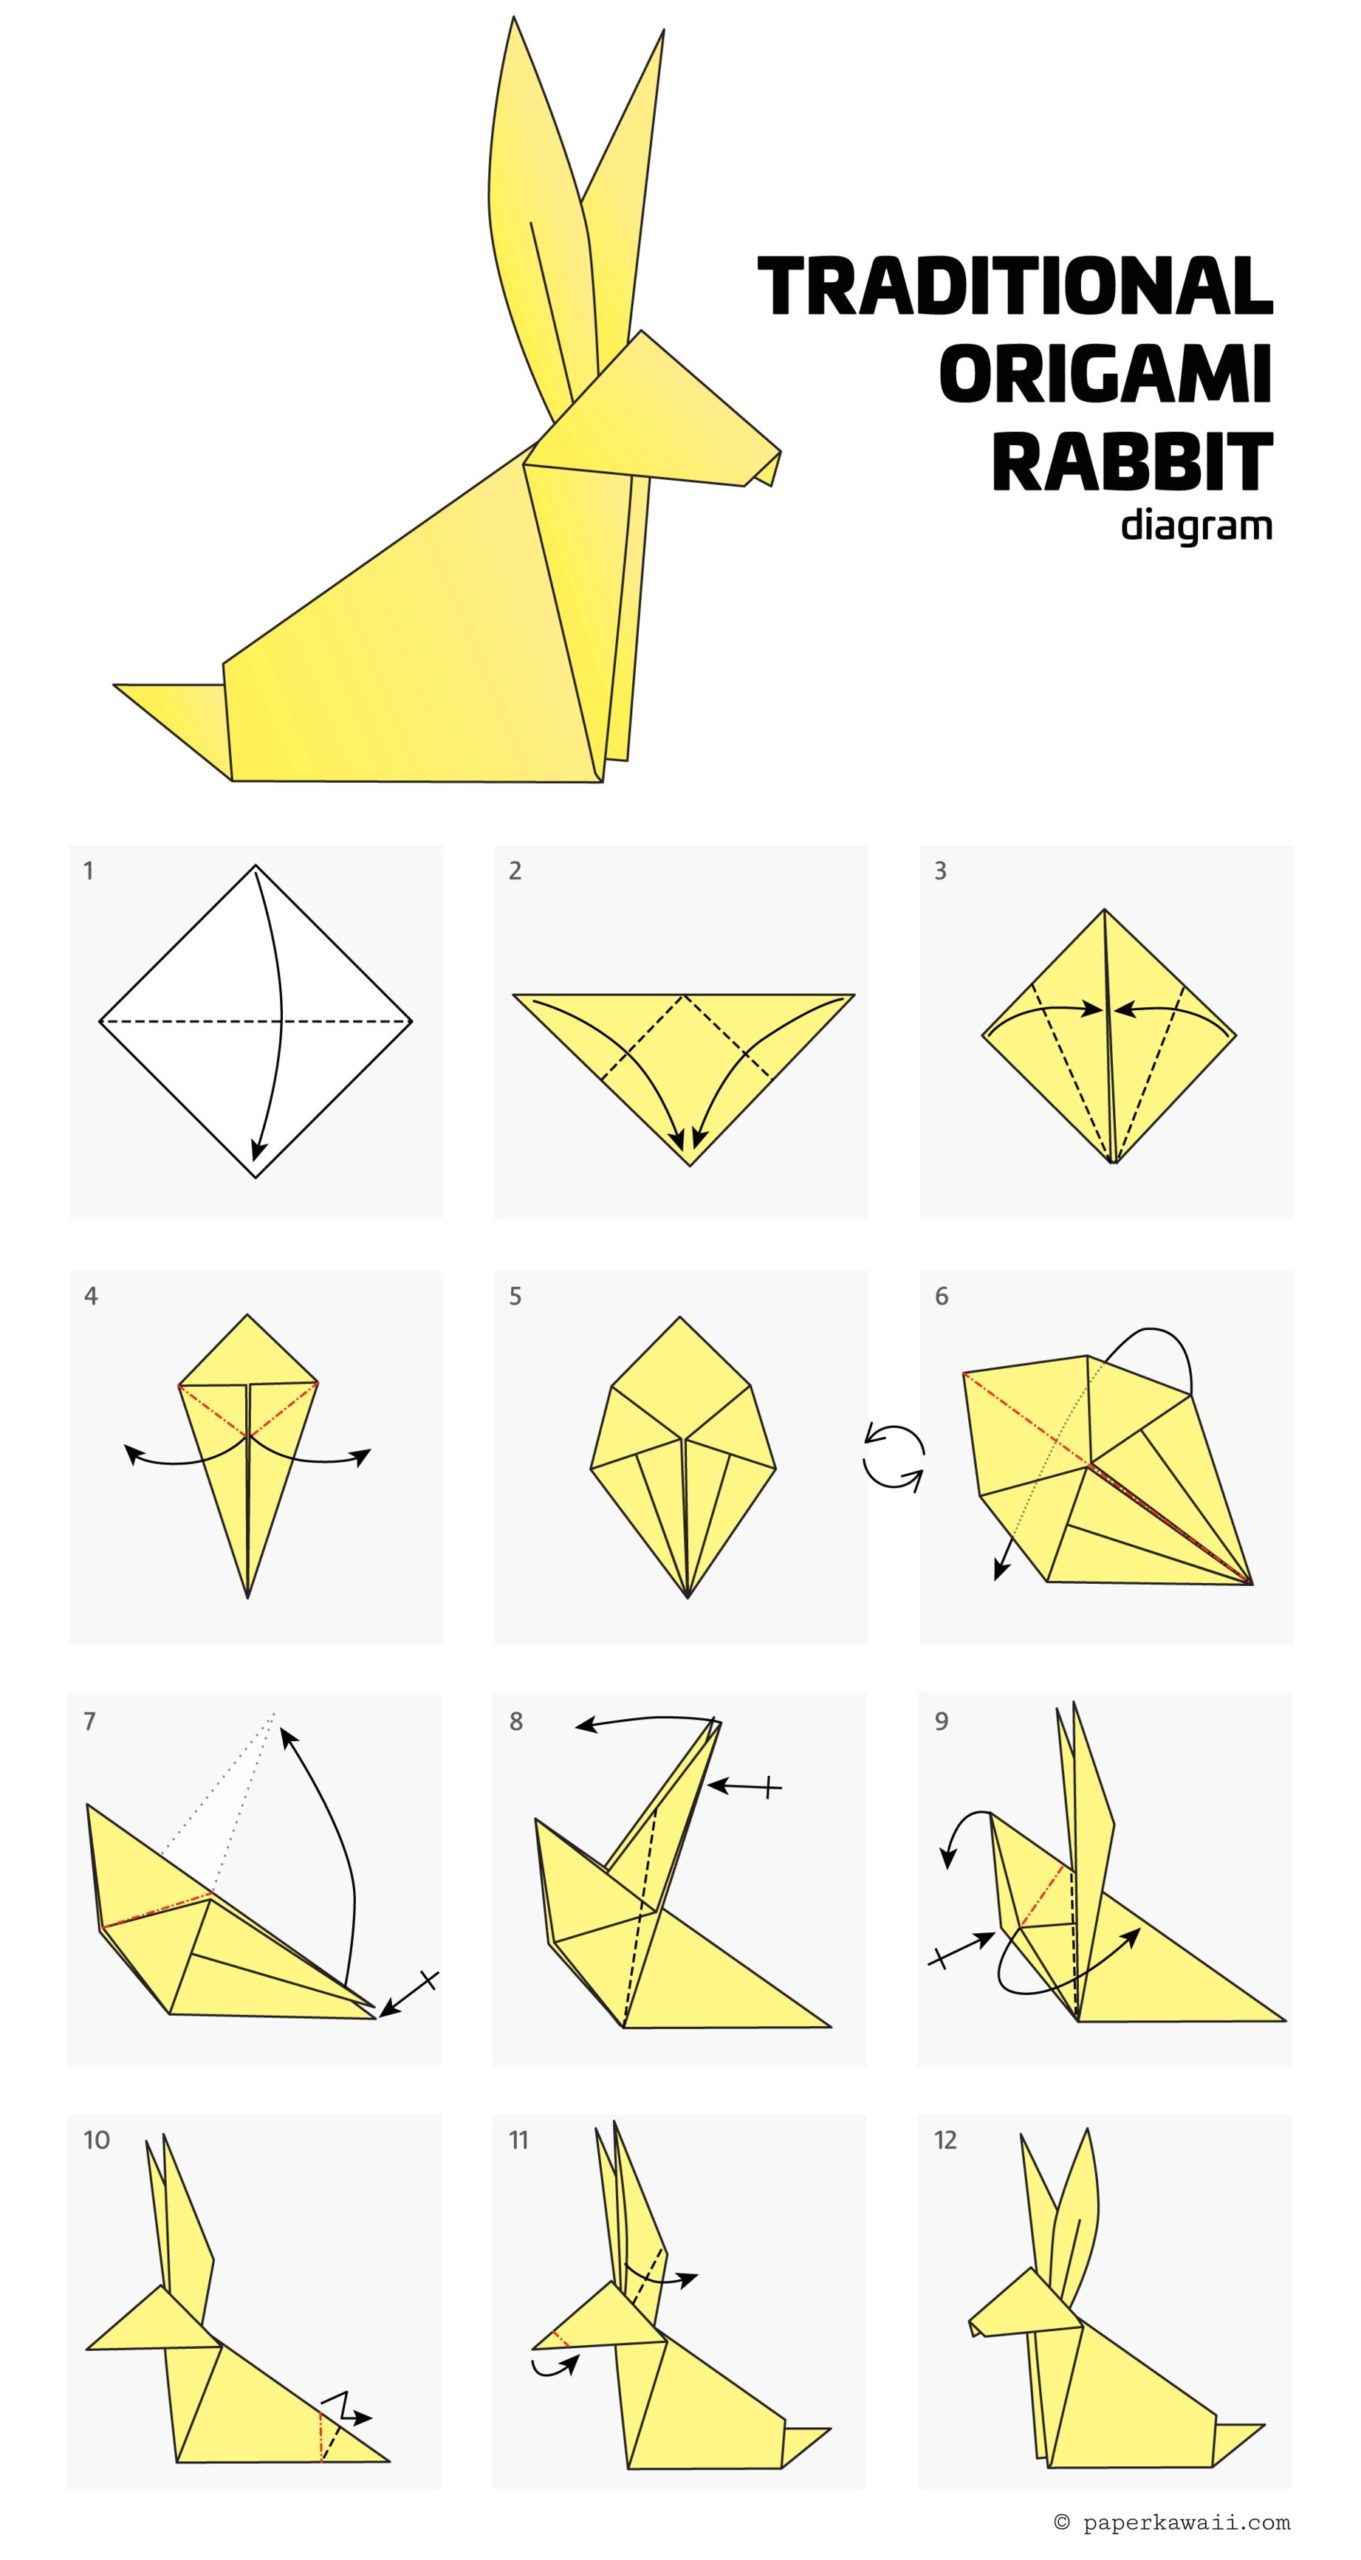 Rabbit Origami diagram